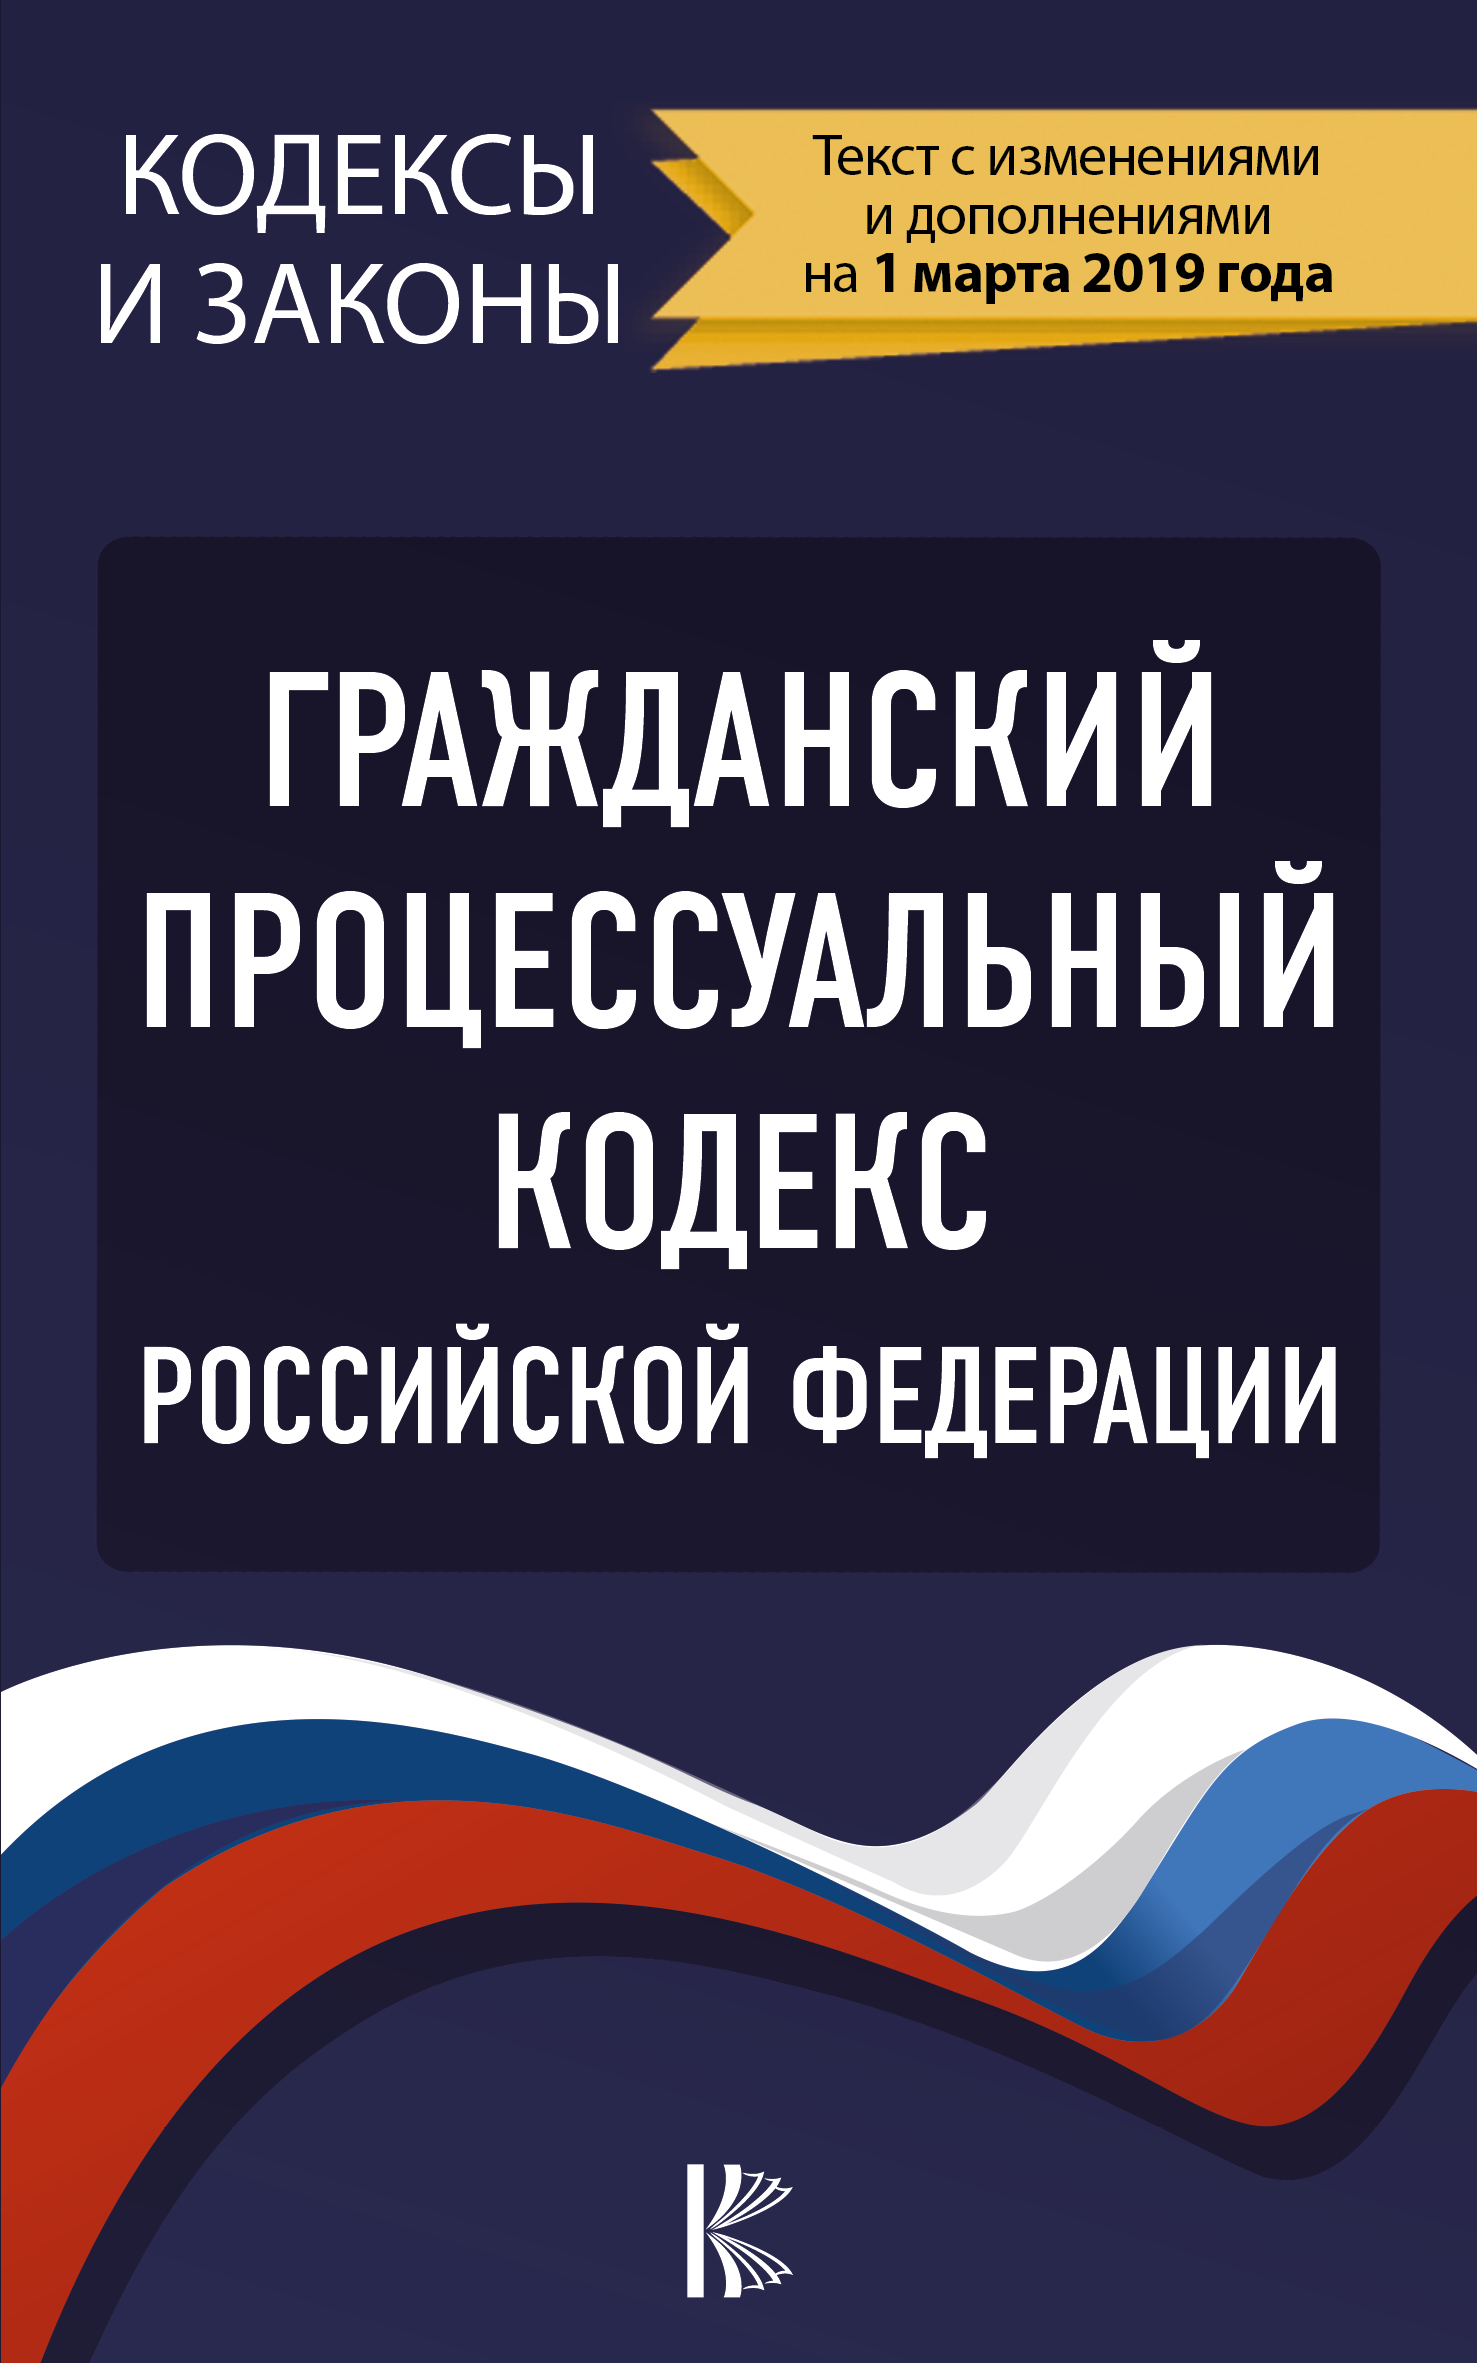  Гражданский процессуальный Кодекс Российской Федерации на 1 марта 2019 года - страница 0